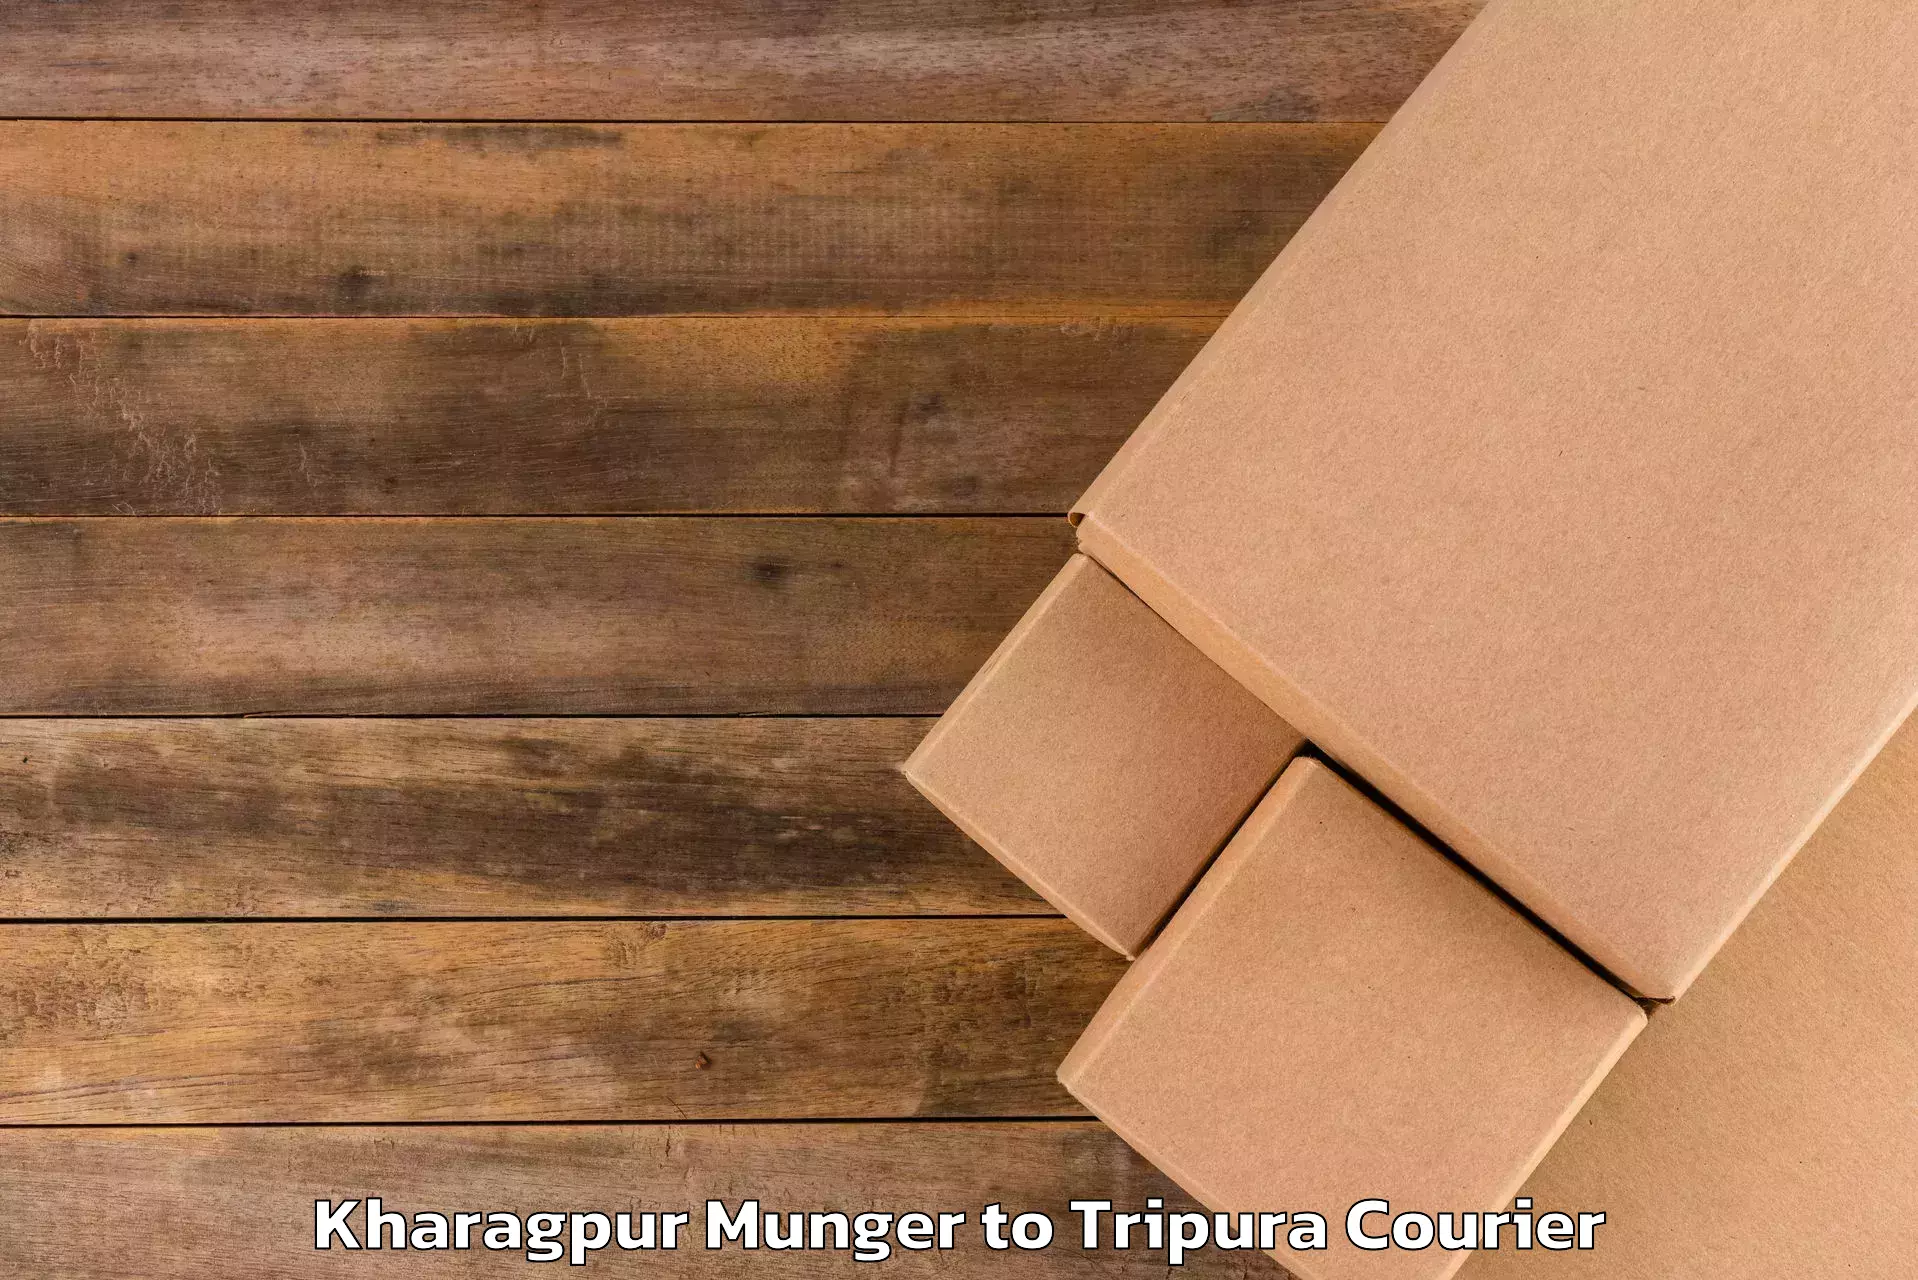 Baggage delivery planning Kharagpur Munger to Bishalgarh